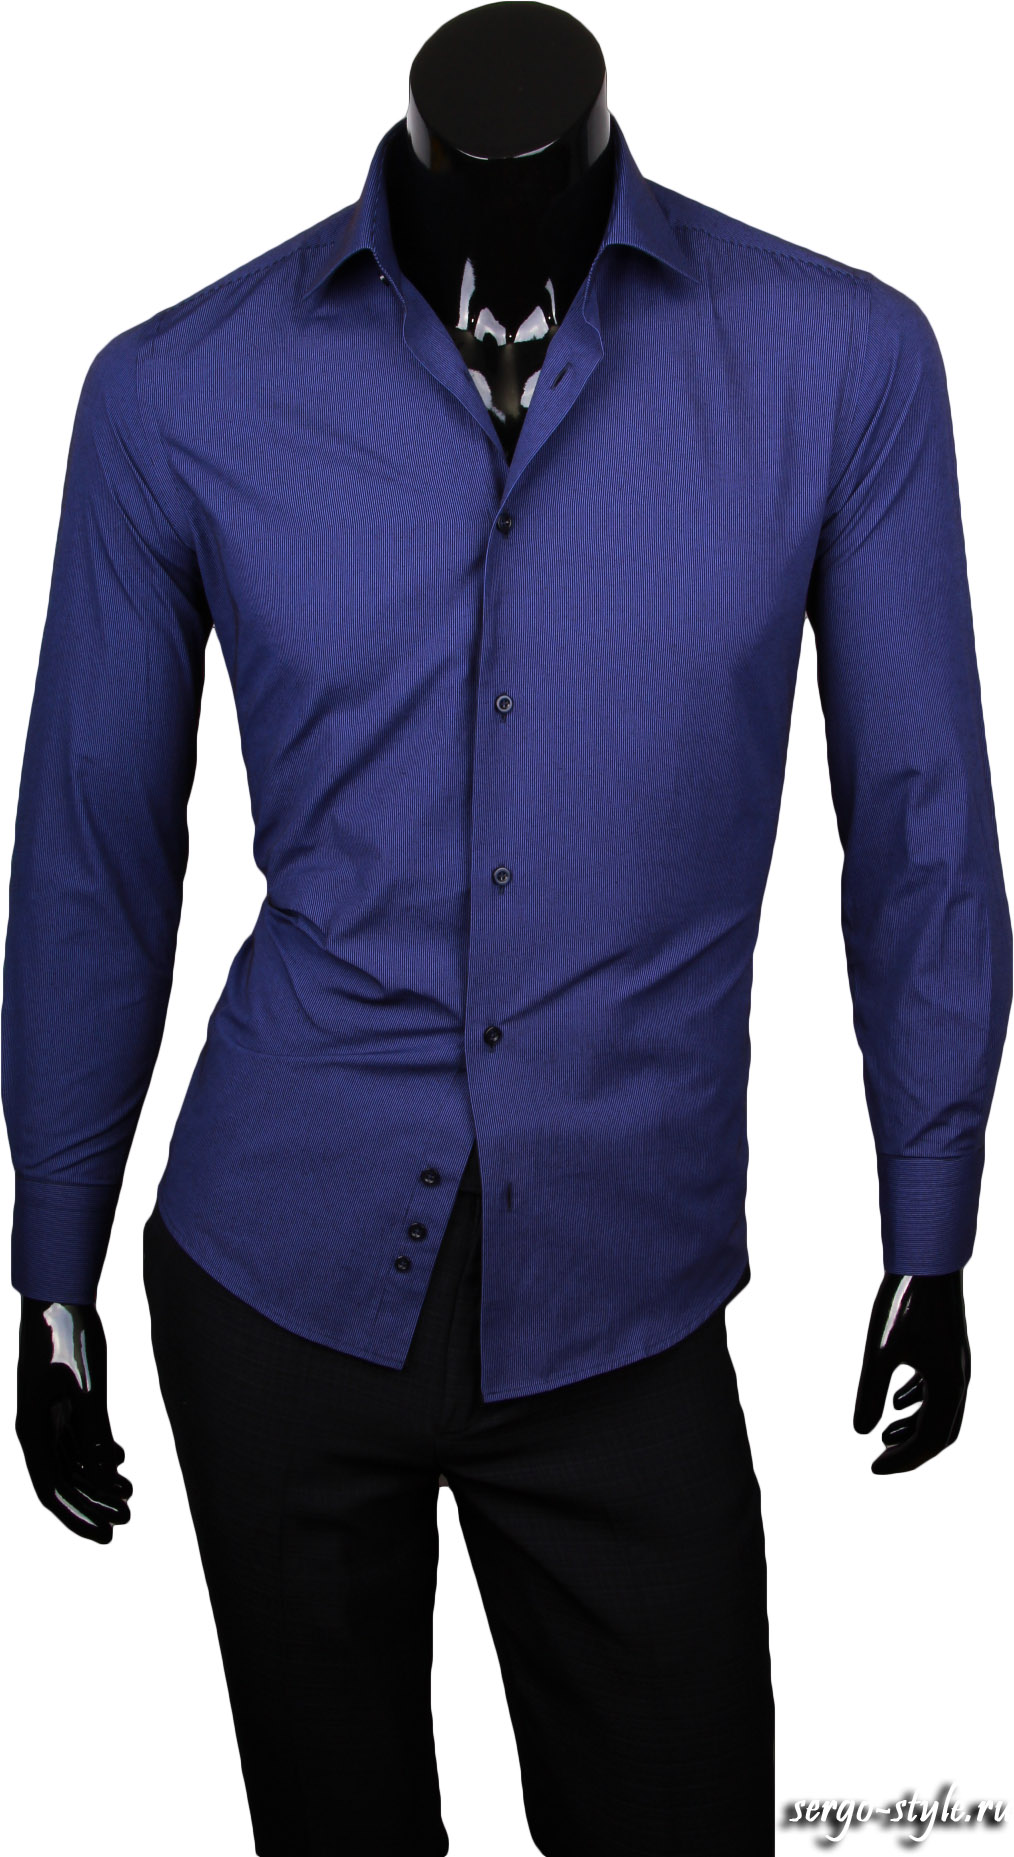 Рубашка Paolo Bertolucci приталенная цвет синий в полоску купить в Москве недорого